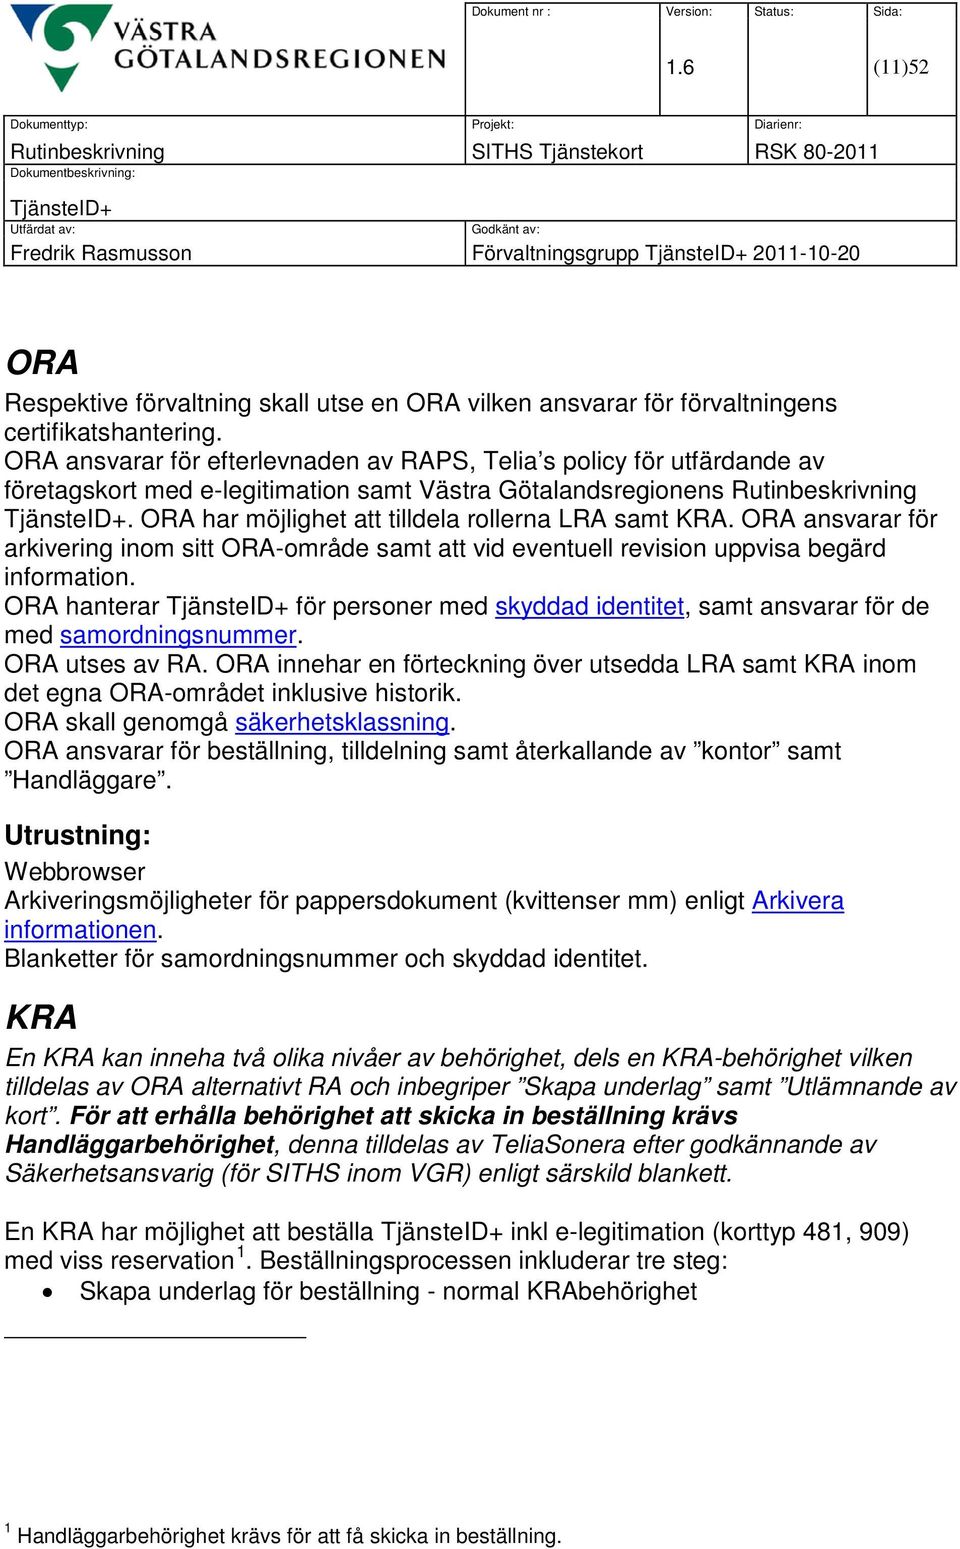 ORA har möjlighet att tilldela rollerna LRA samt KRA. ORA ansvarar för arkivering inom sitt ORA-område samt att vid eventuell revision uppvisa begärd information.